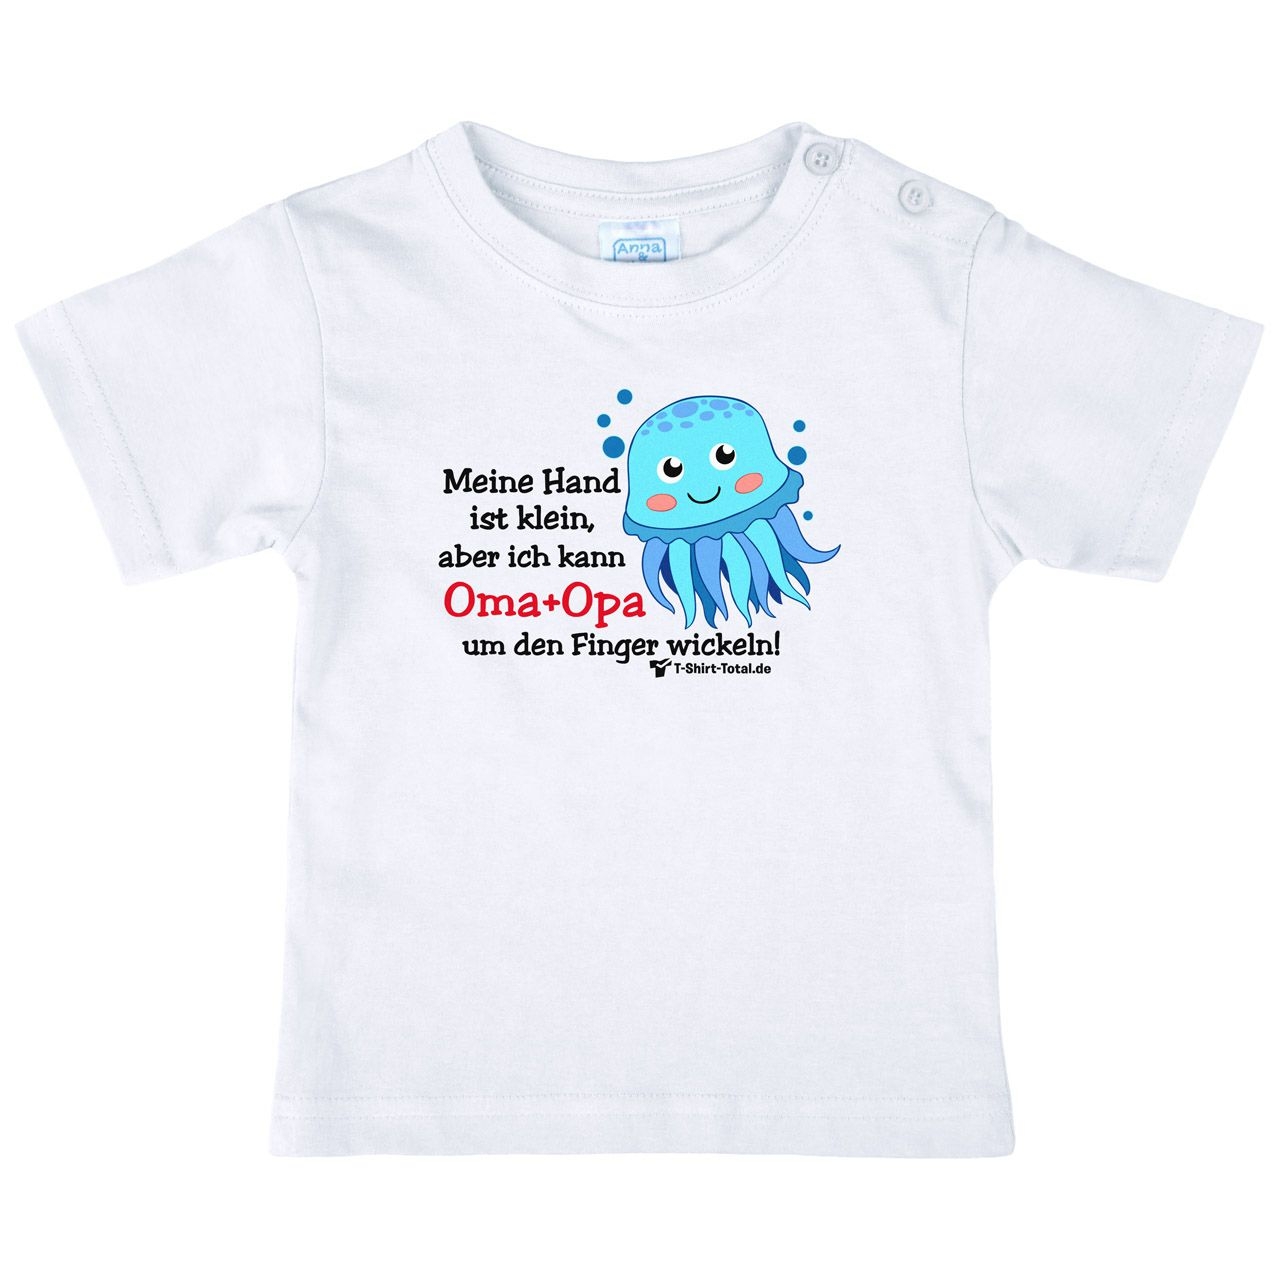 Kleine Hand Oma Opa Octopus Kinder T-Shirt weiß 68 / 74